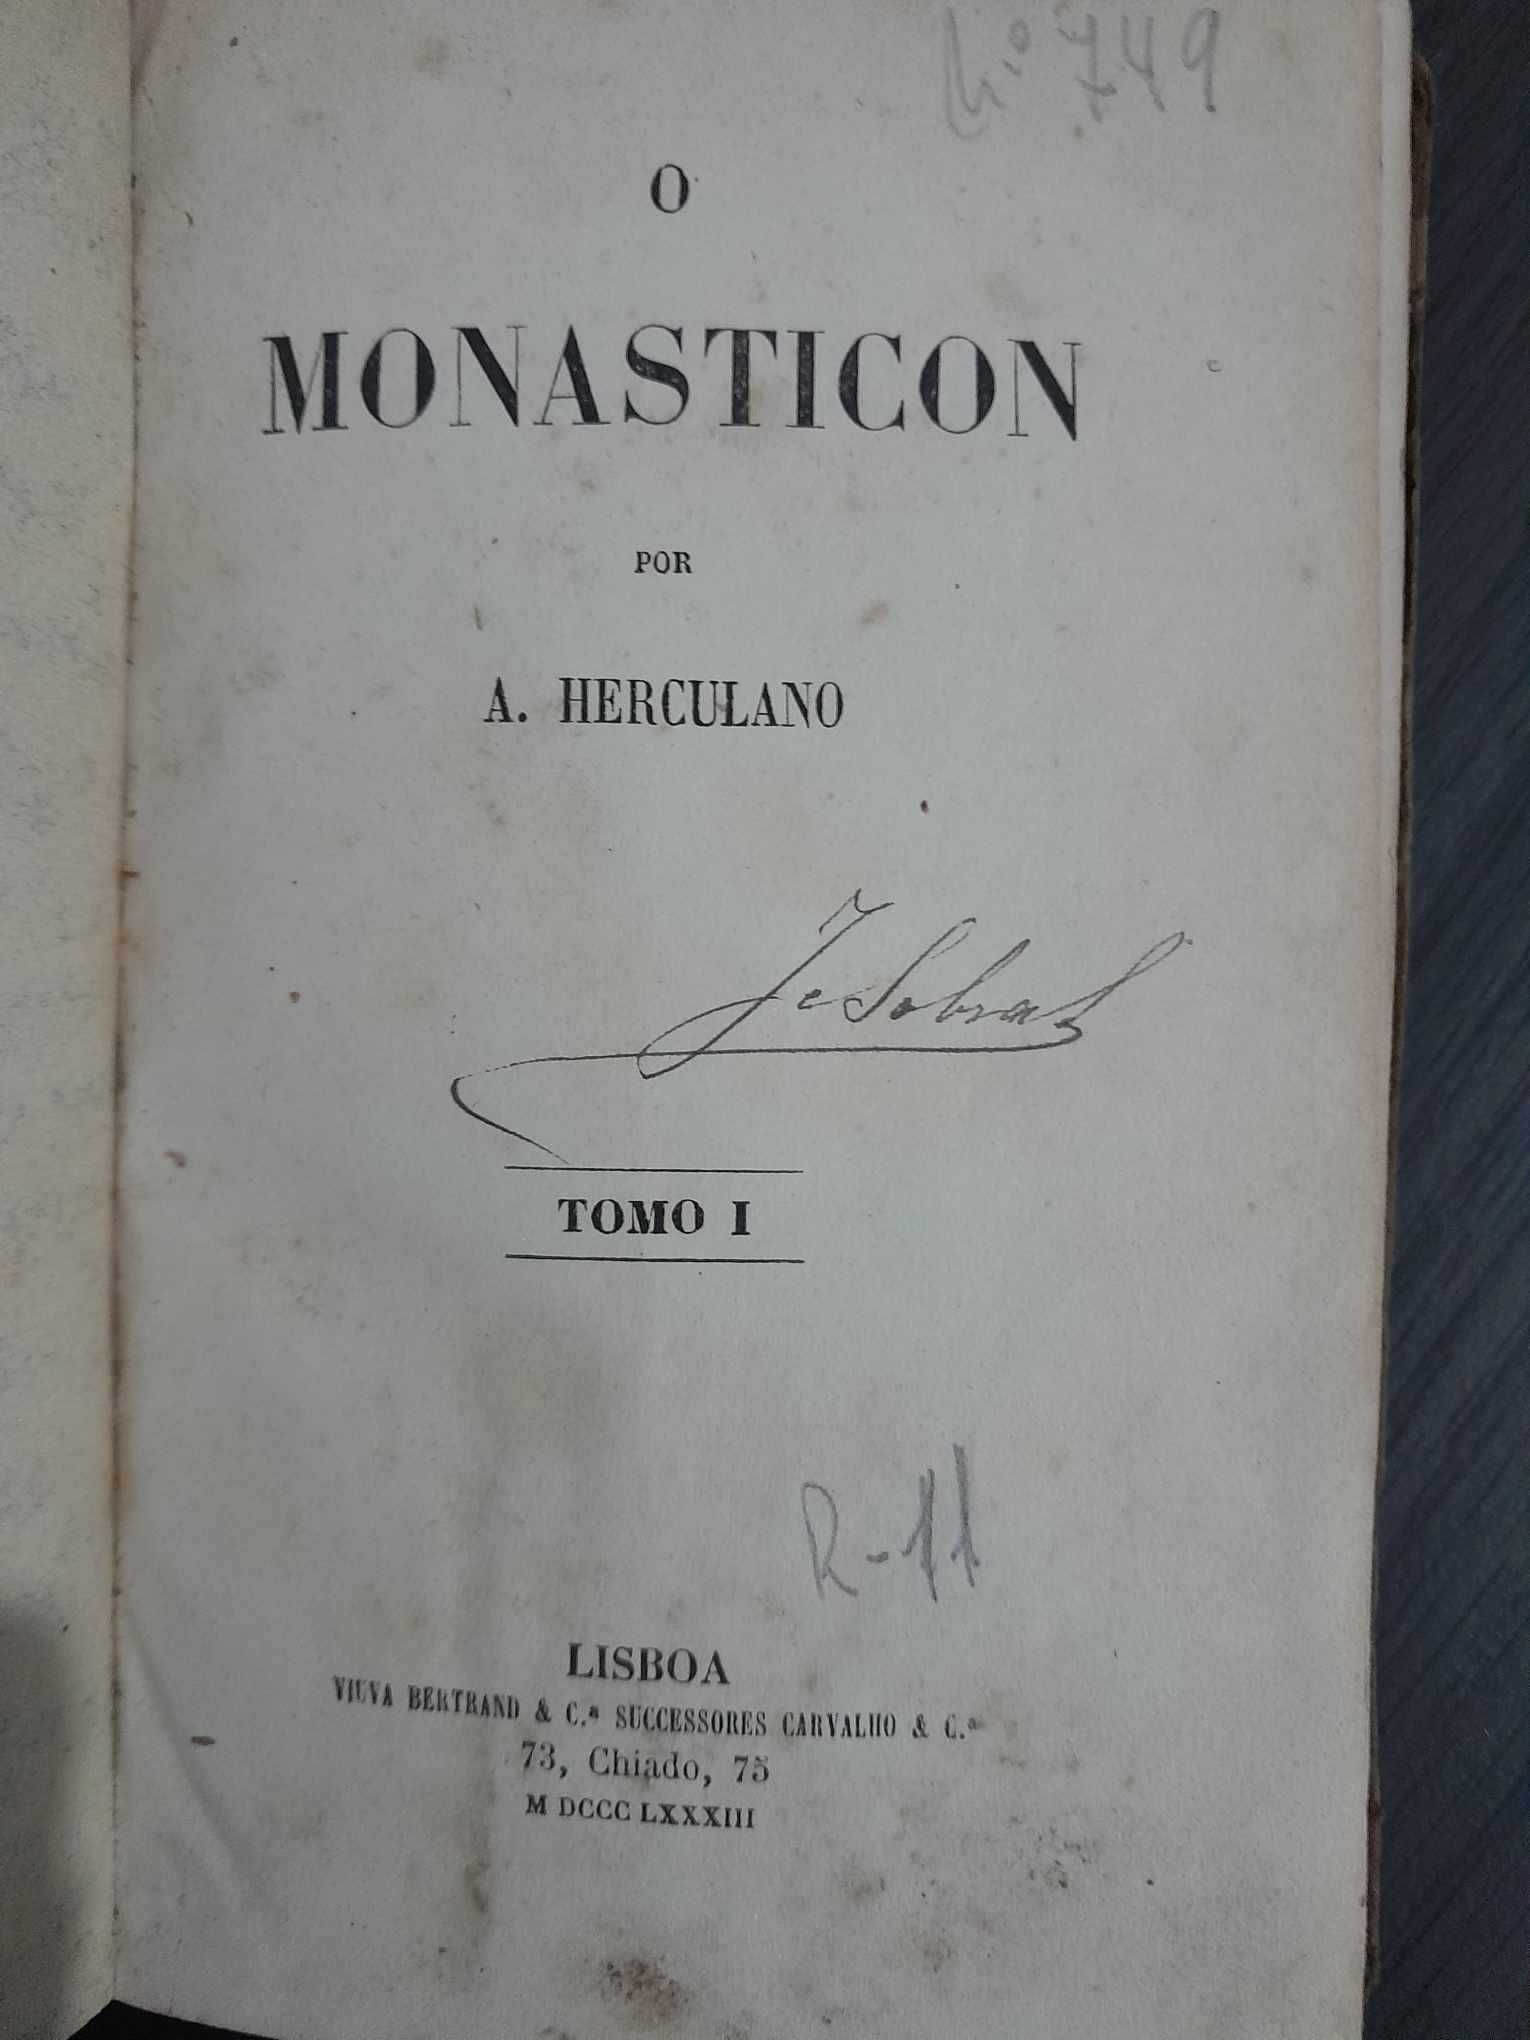 "O Monasticon - Eurico, o Presbytero" de A. Herculano - Edição 1883